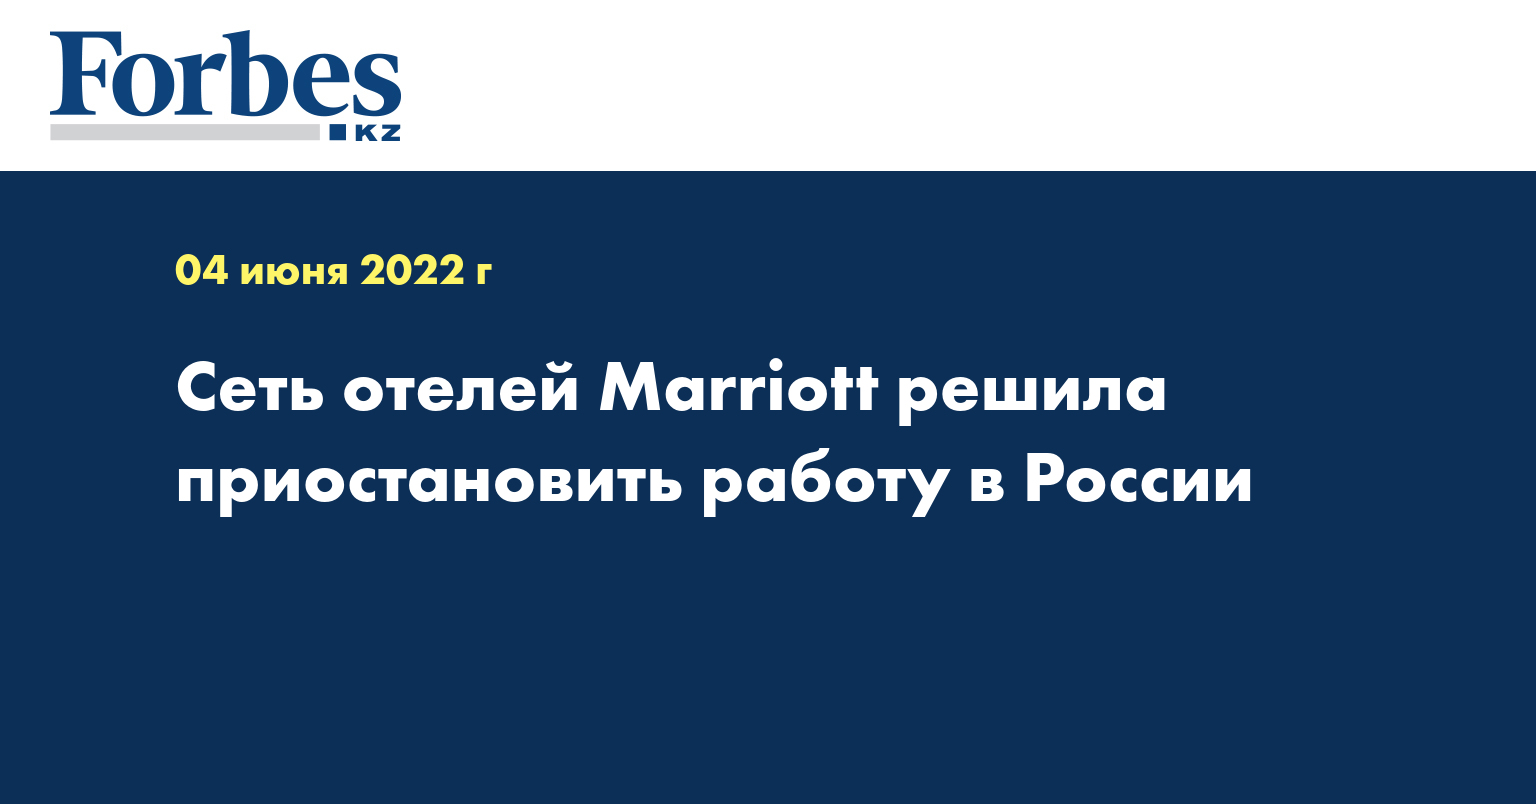 Сеть отелей Marriott решила приостановить работу в России